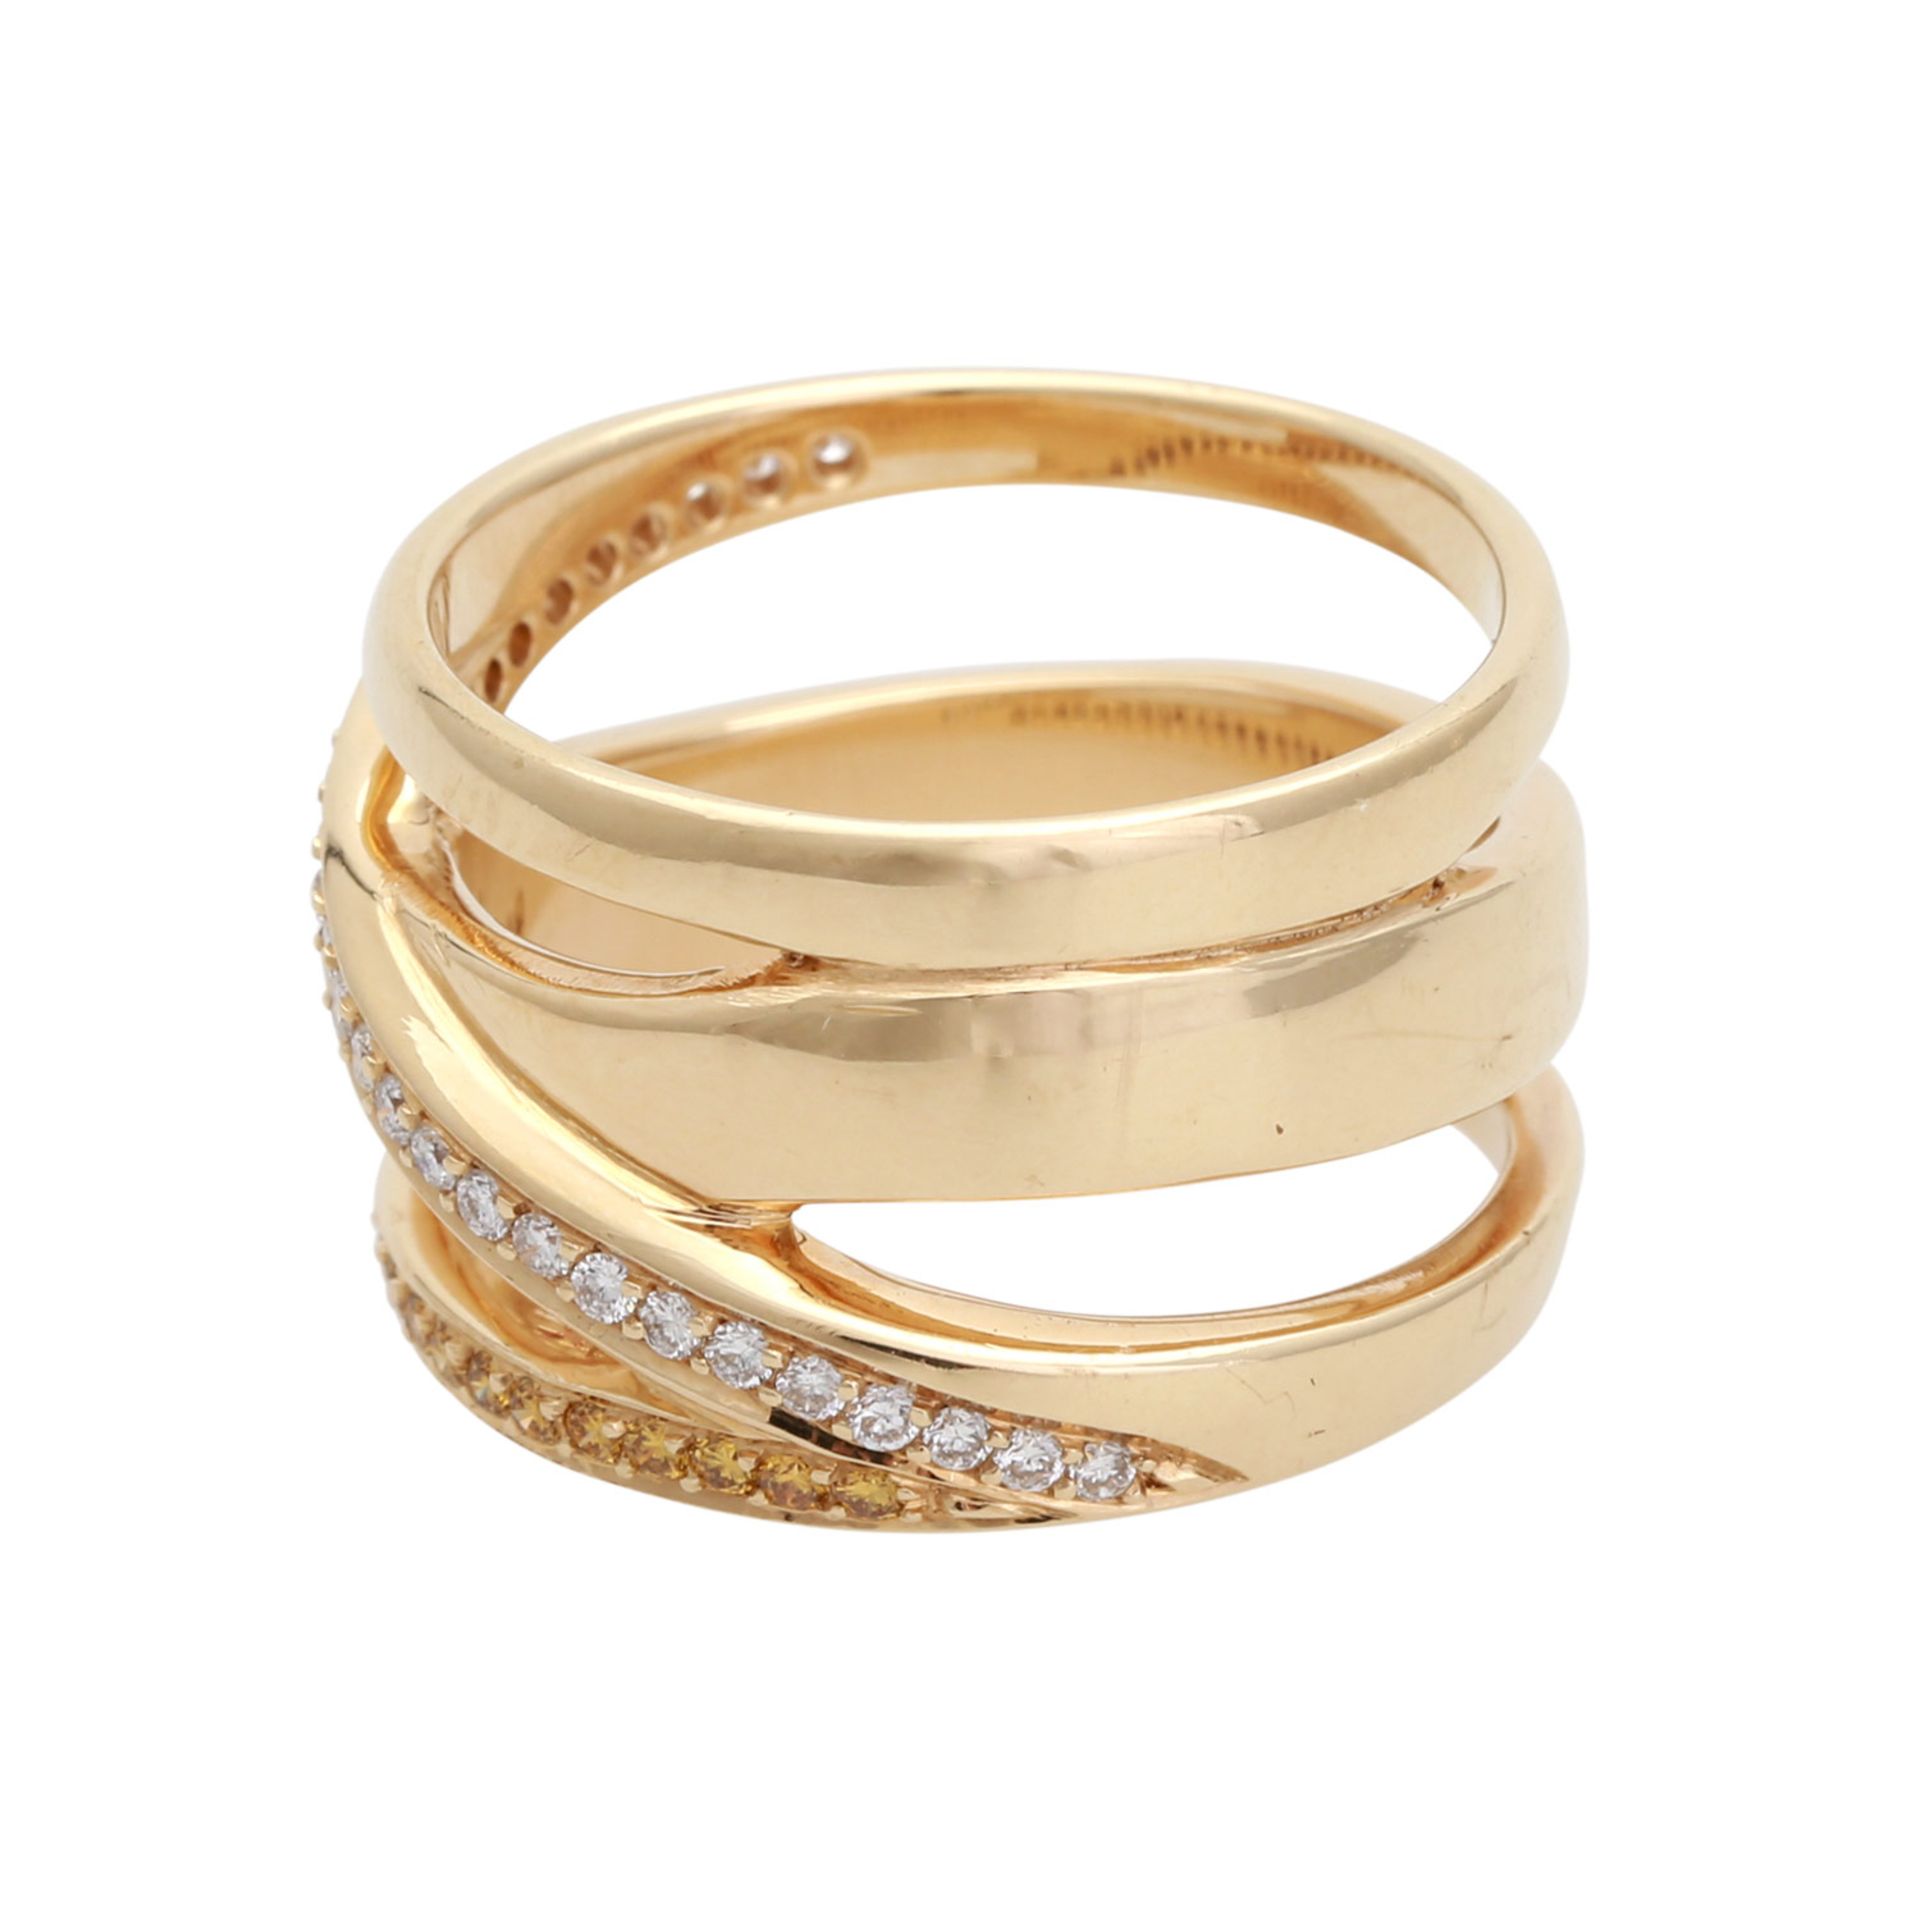 Ring mit 28 weißen und 23 gelben Brillanten, zus. ca. 0,51 ct, guter Farb- und Reinheitsgrad, - Bild 2 aus 4